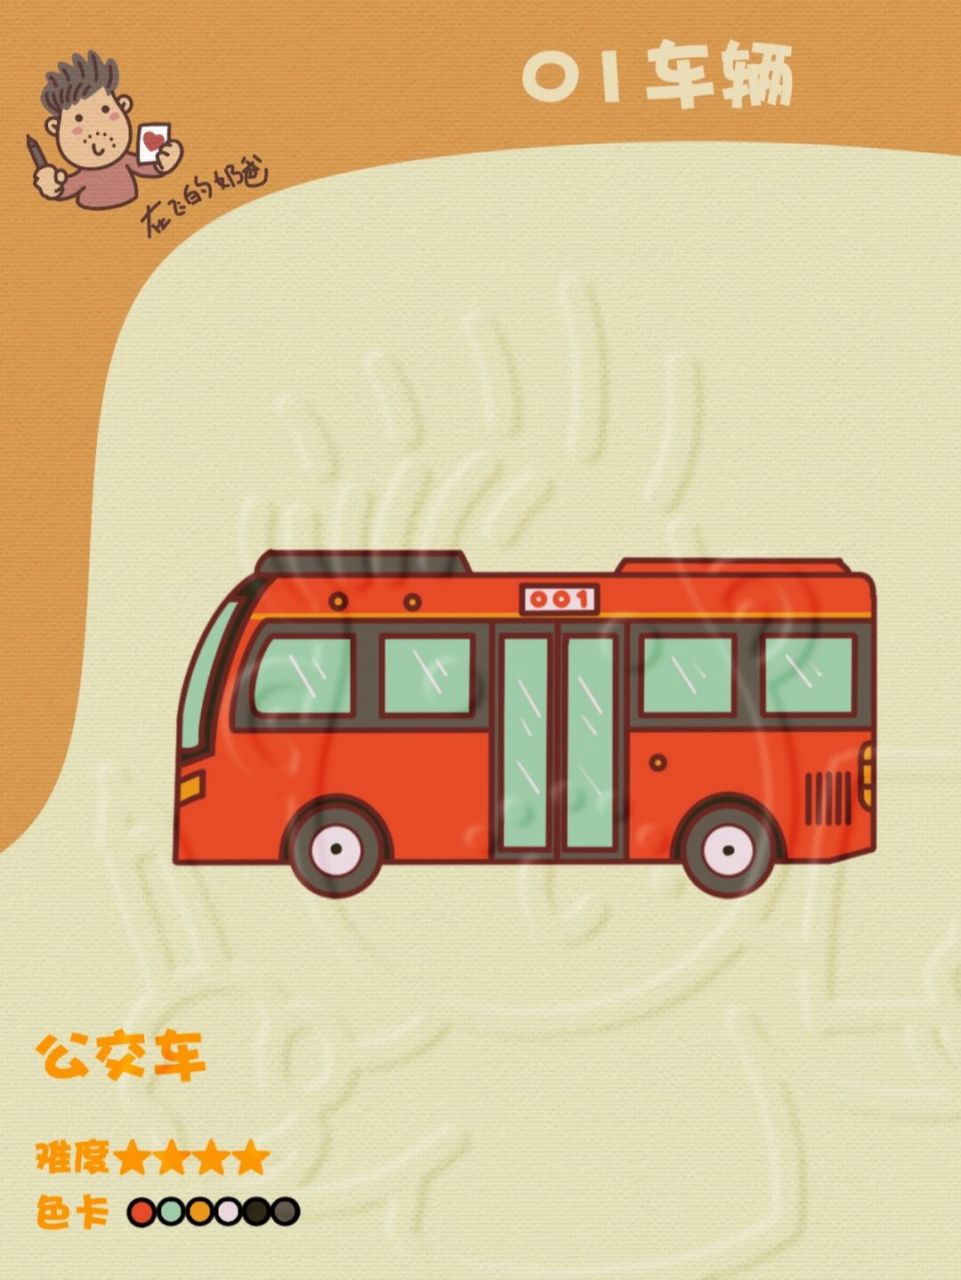 公交车投币简笔画图片